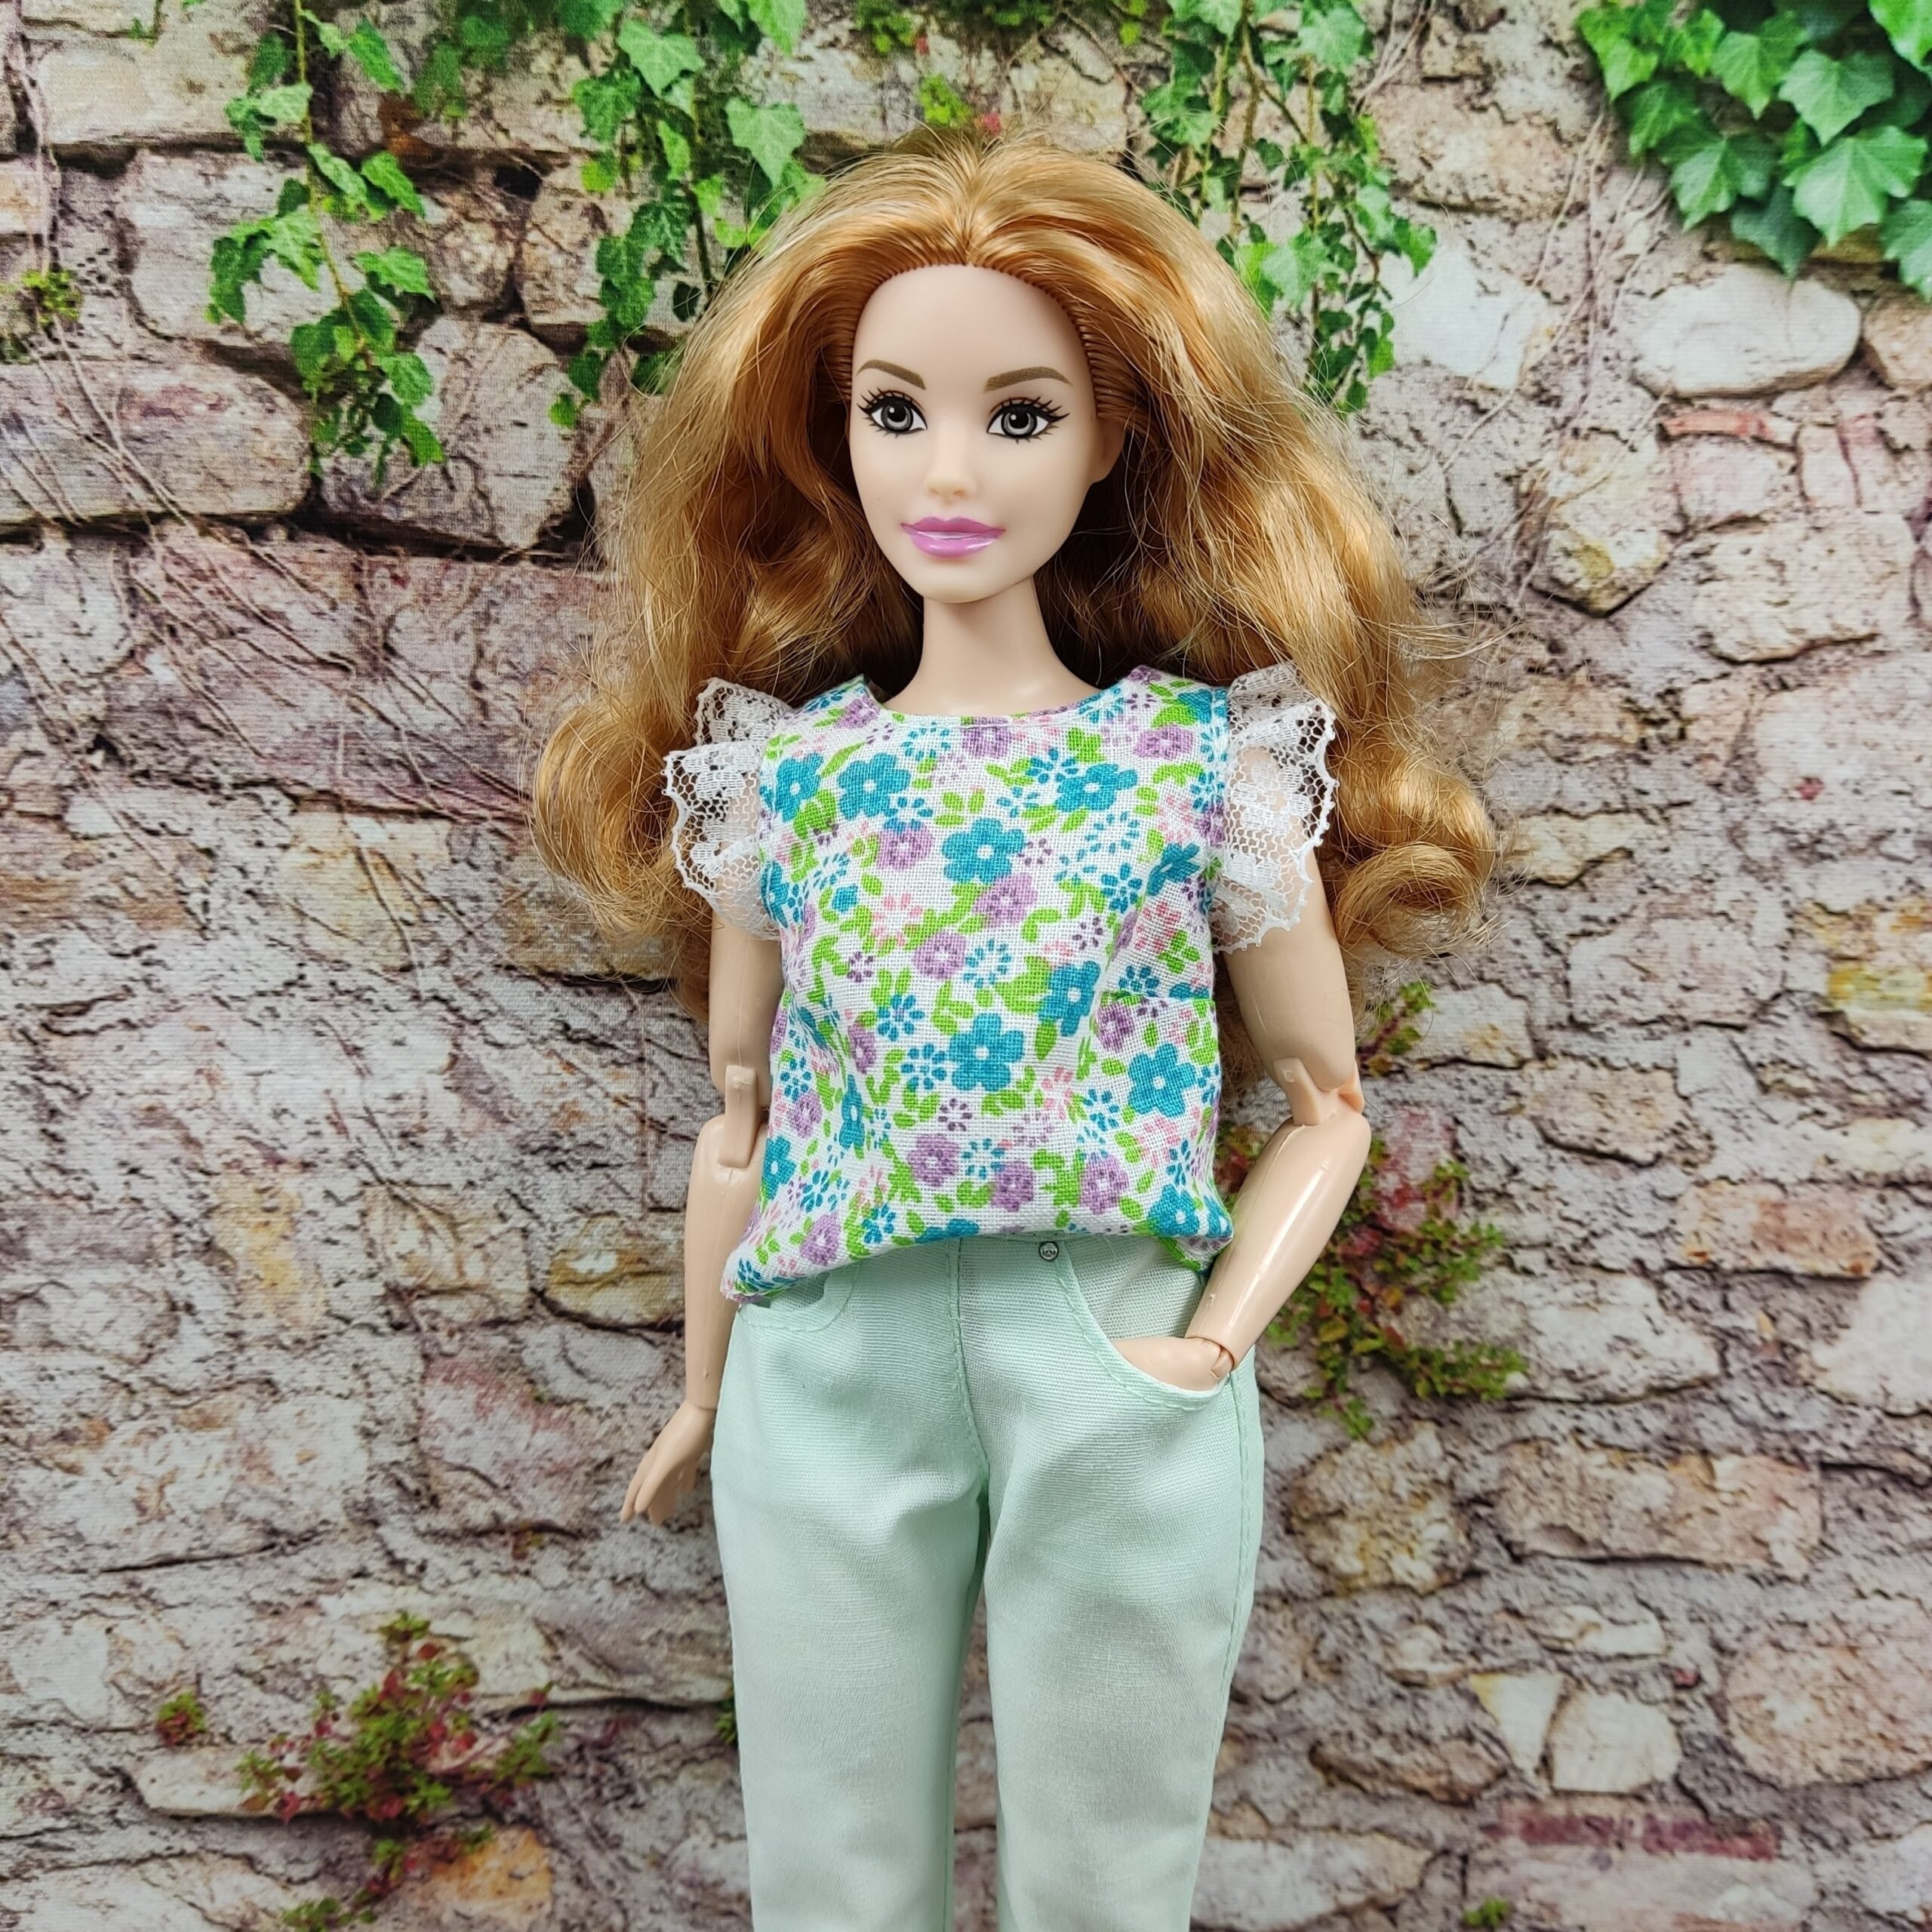 kande Gemme gård Barbie doll clothes | Floral blouse for Barbie curvy